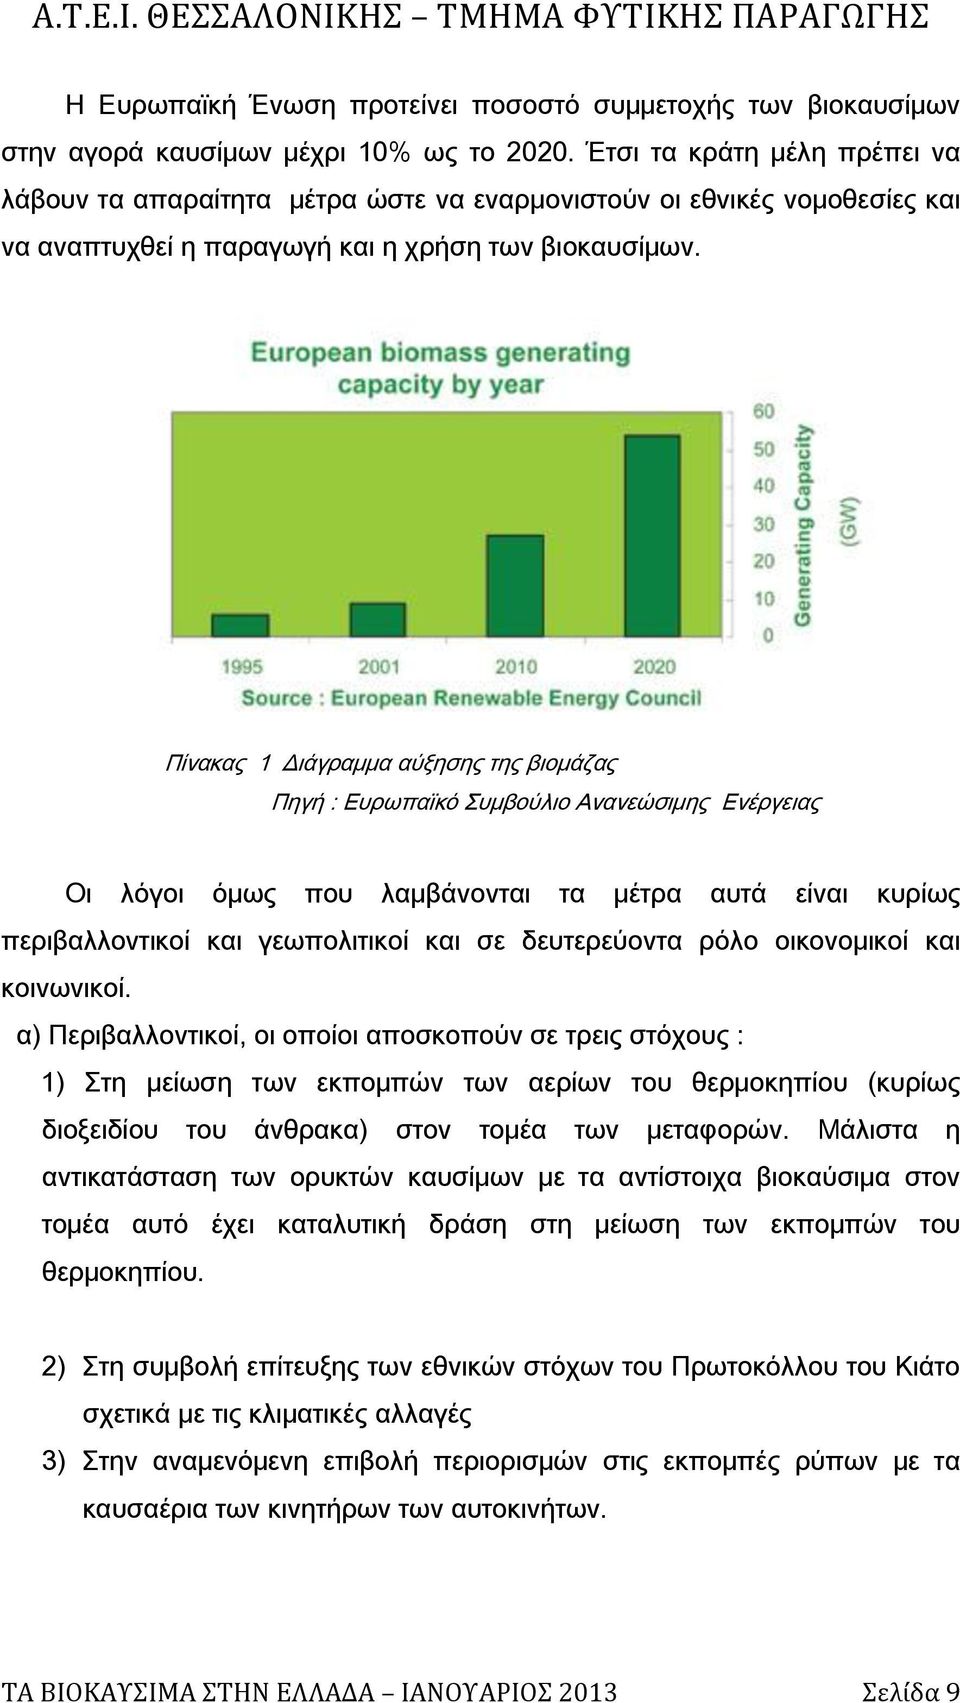 Πίνακας 1 Διάγραμμα αύξησης της βιομάζας Πηγή : Ευρωπαϊκό υμβούλιο Ανανεώσιμης Ενέργειας Οι λόγοι όμως που λαμβάνονται τα μέτρα αυτά είναι κυρίως περιβαλλοντικοί και γεωπολιτικοί και σε δευτερεύοντα